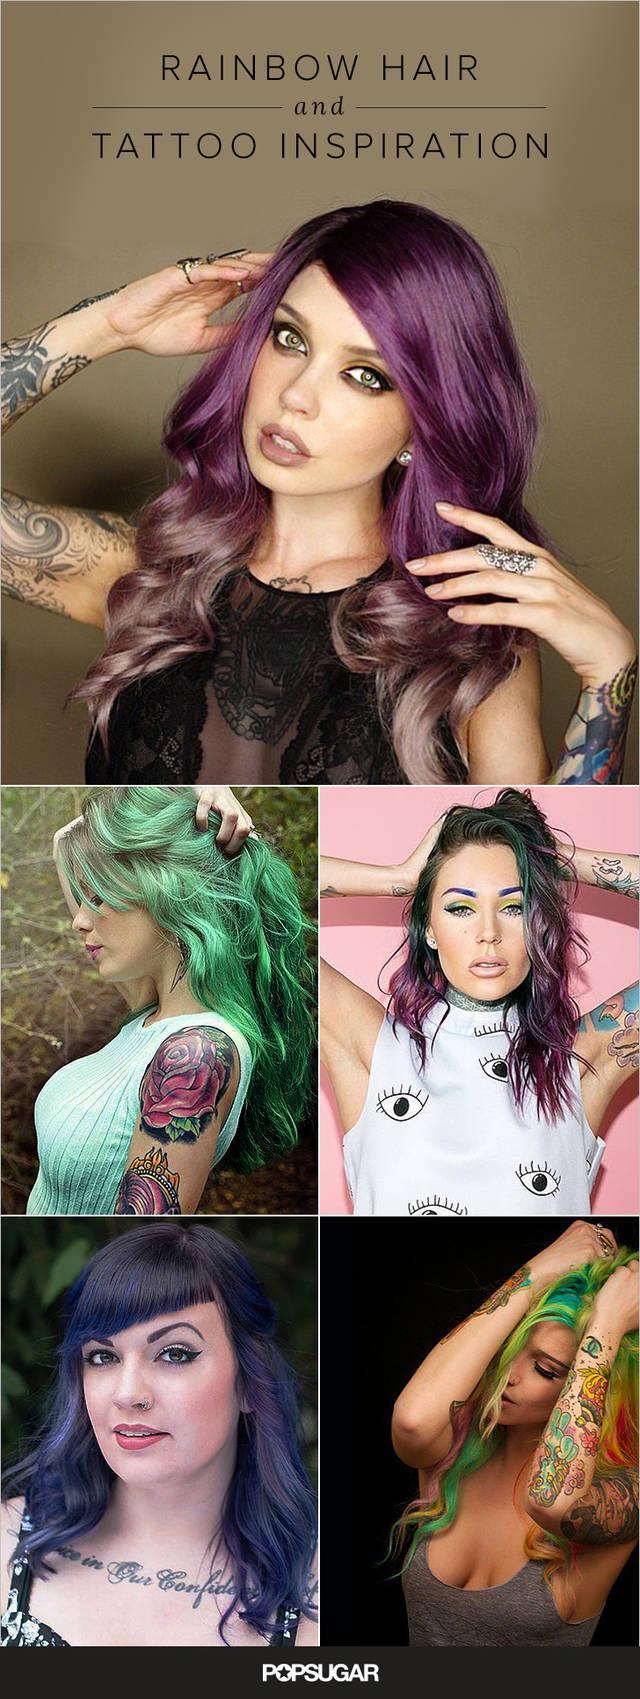 รูปภาพ:http://media4.popsugar-assets.com/files/2015/10/07/720/n/1922153/7e8eebd96daca812_Beauty_Rainbow_Hair_and_Tattoo_Inspiration/i/Pin.jpg